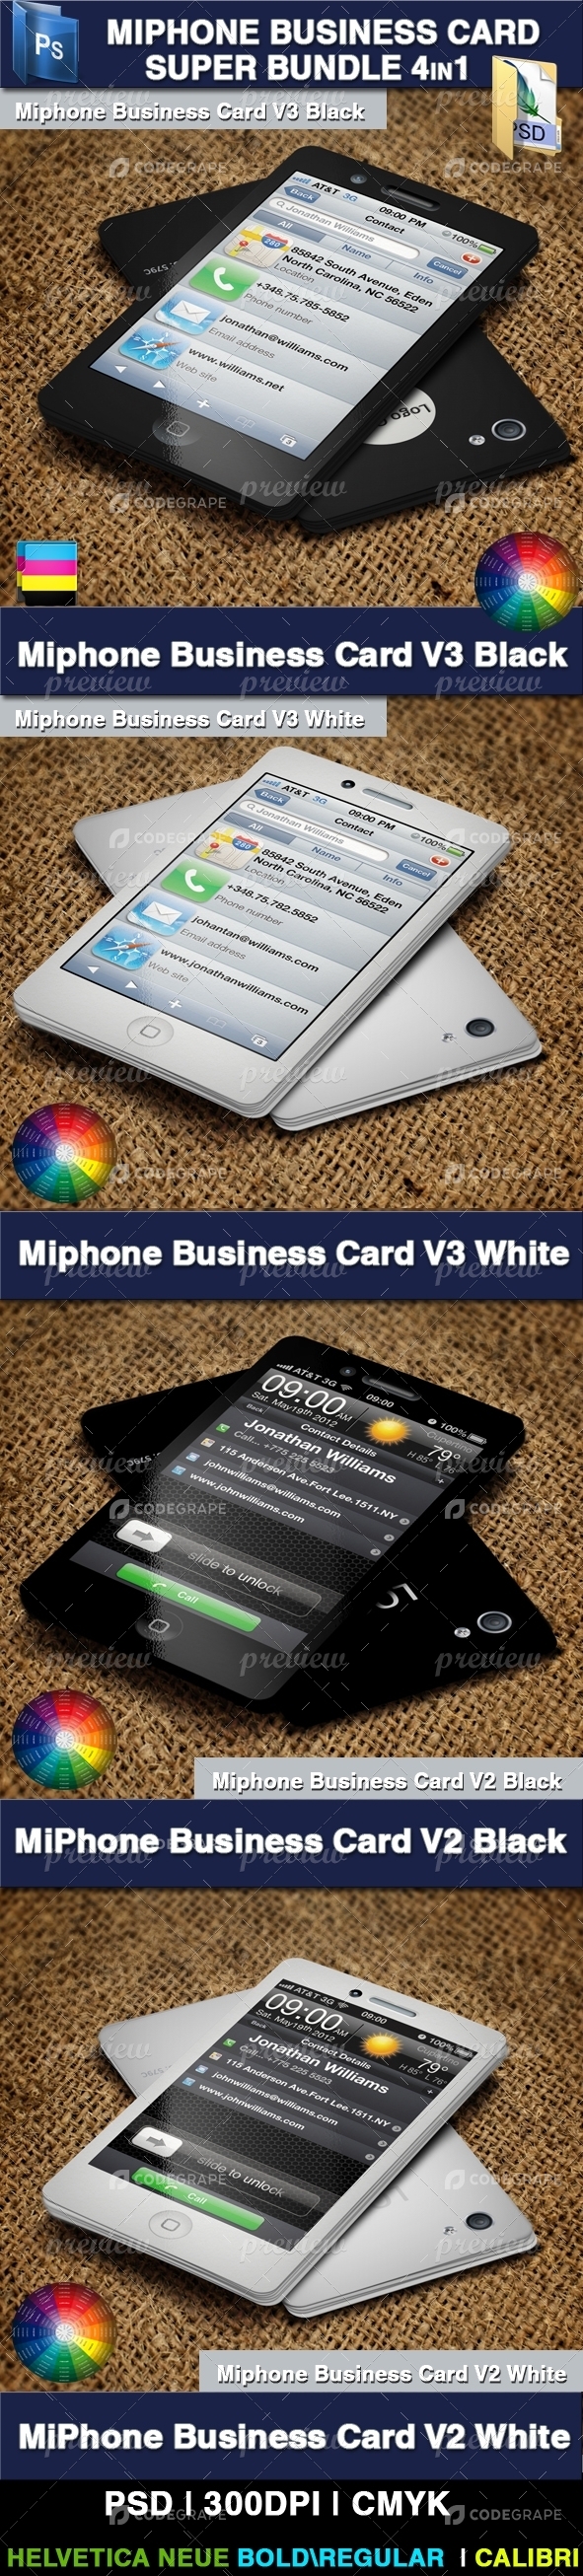 Miphone Business Card Super Bundle 4in1